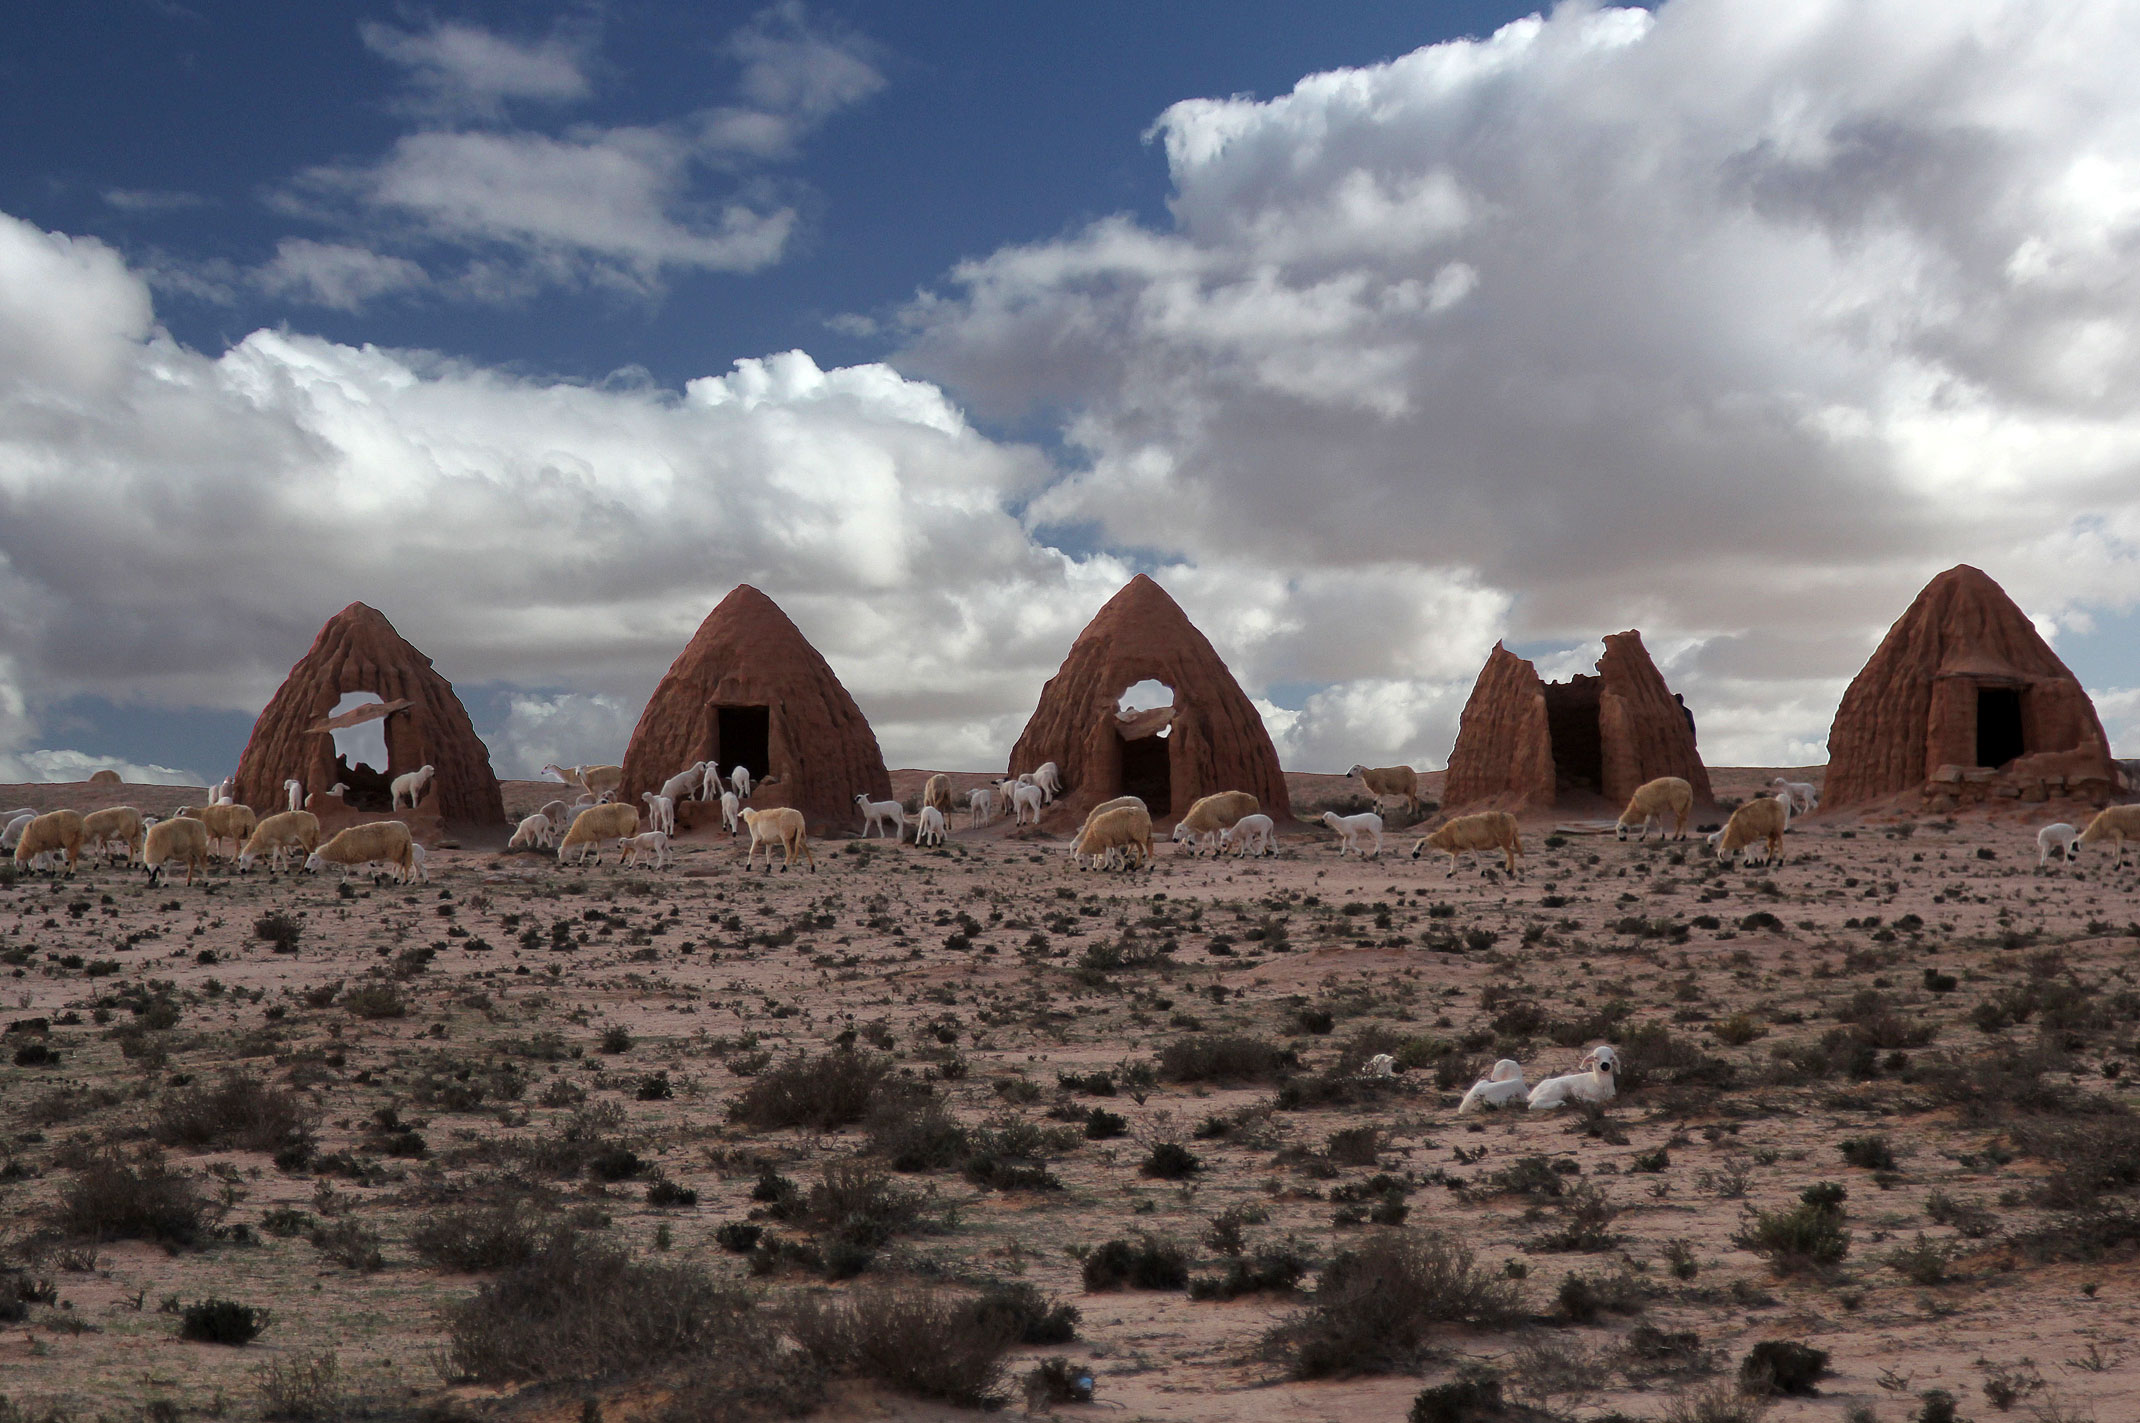 Maroko.Abteh.Osada zlożona z małych glinianych domków,wyglądająca jak sceneria do Gwiezdnych Wojen.